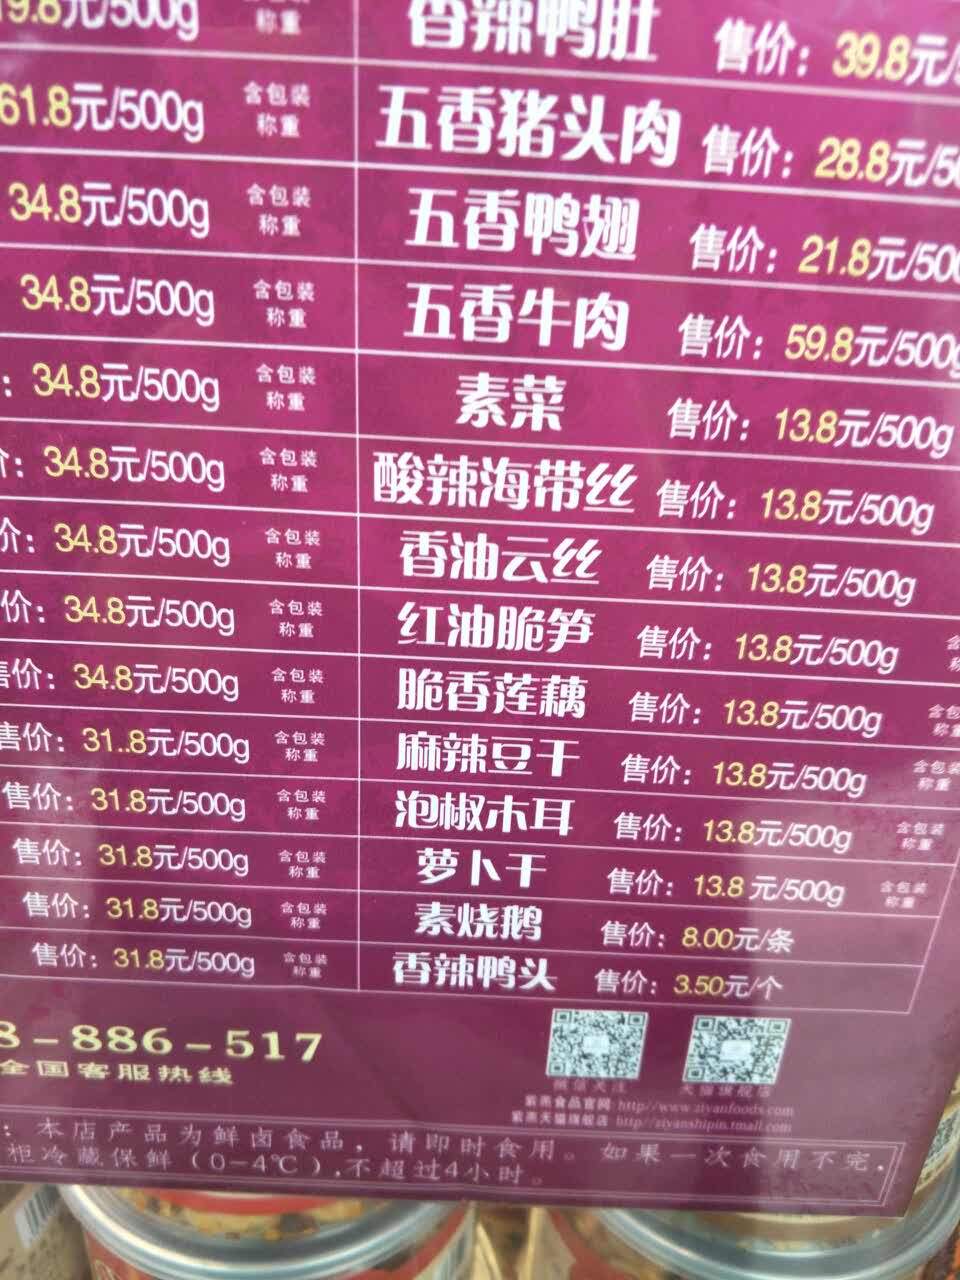 2022紫燕百味鸡(工业南店)美食餐厅,味道非常好,每次路过都会买 【